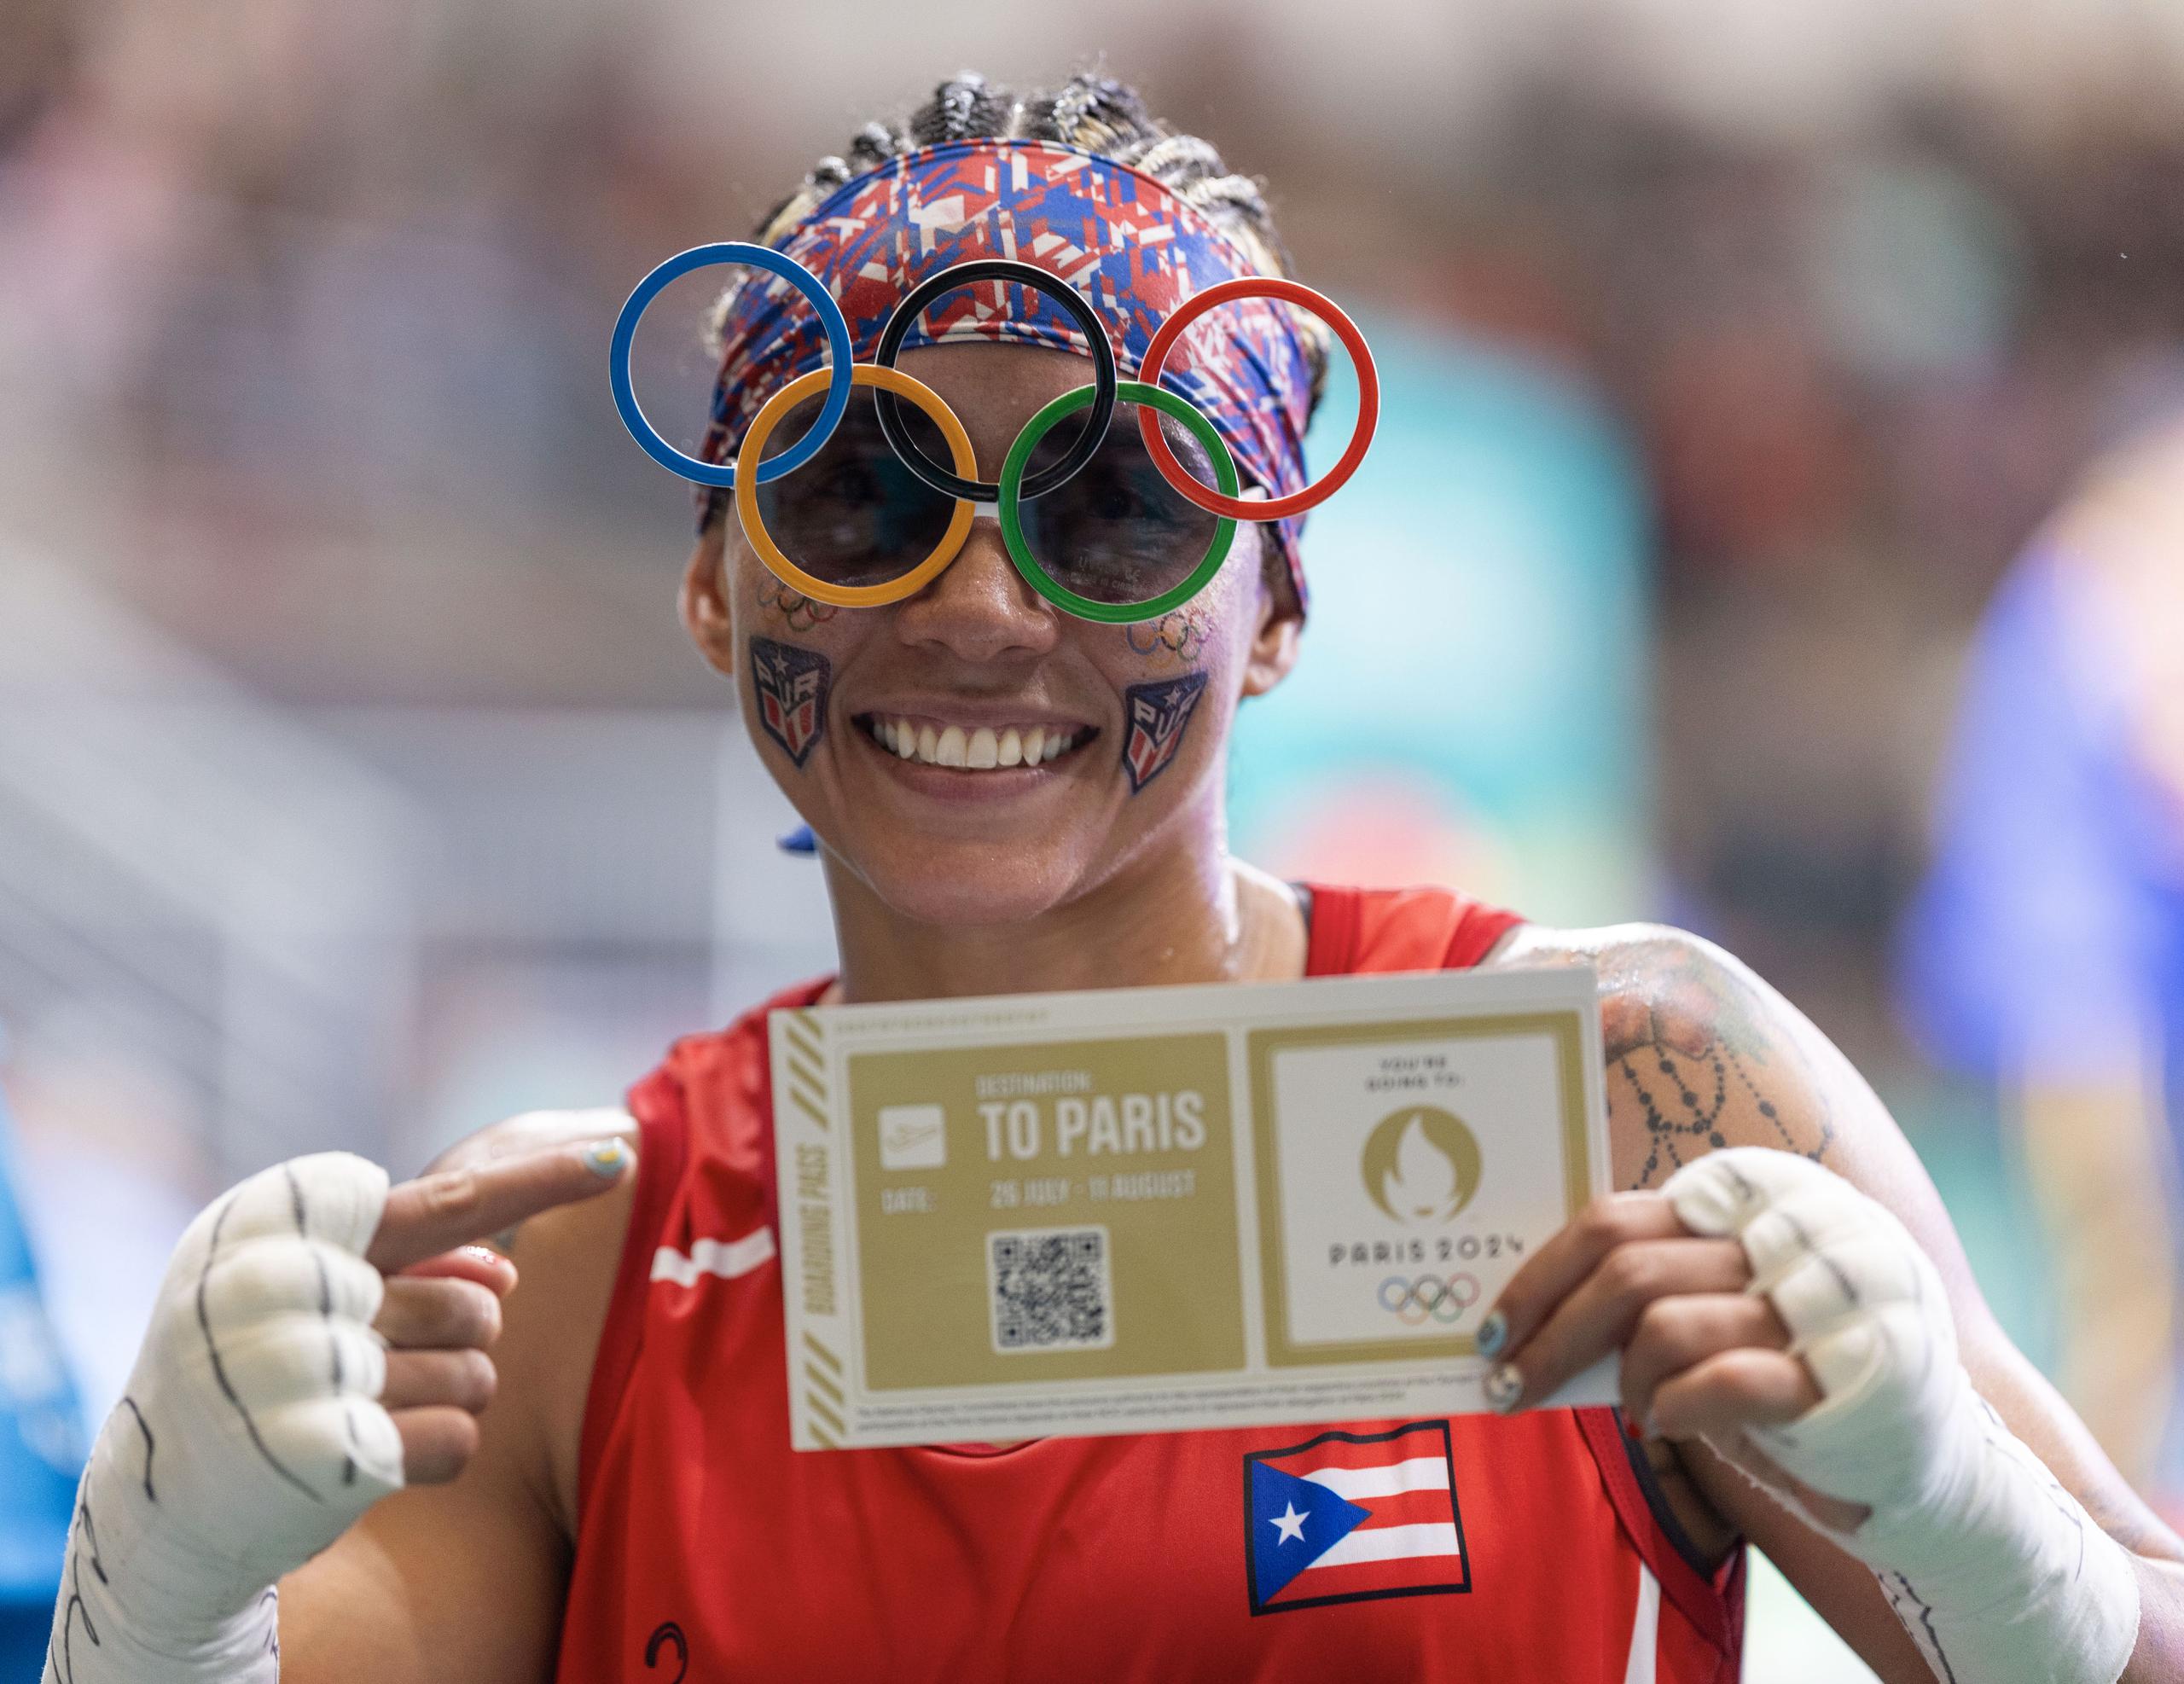 La clasificada a París 2024, Ashleyann Lozada acompañará a la Selección Nacional a fogueos y eventos de clasificación olímpica como parte de su preparación para los Juegos.